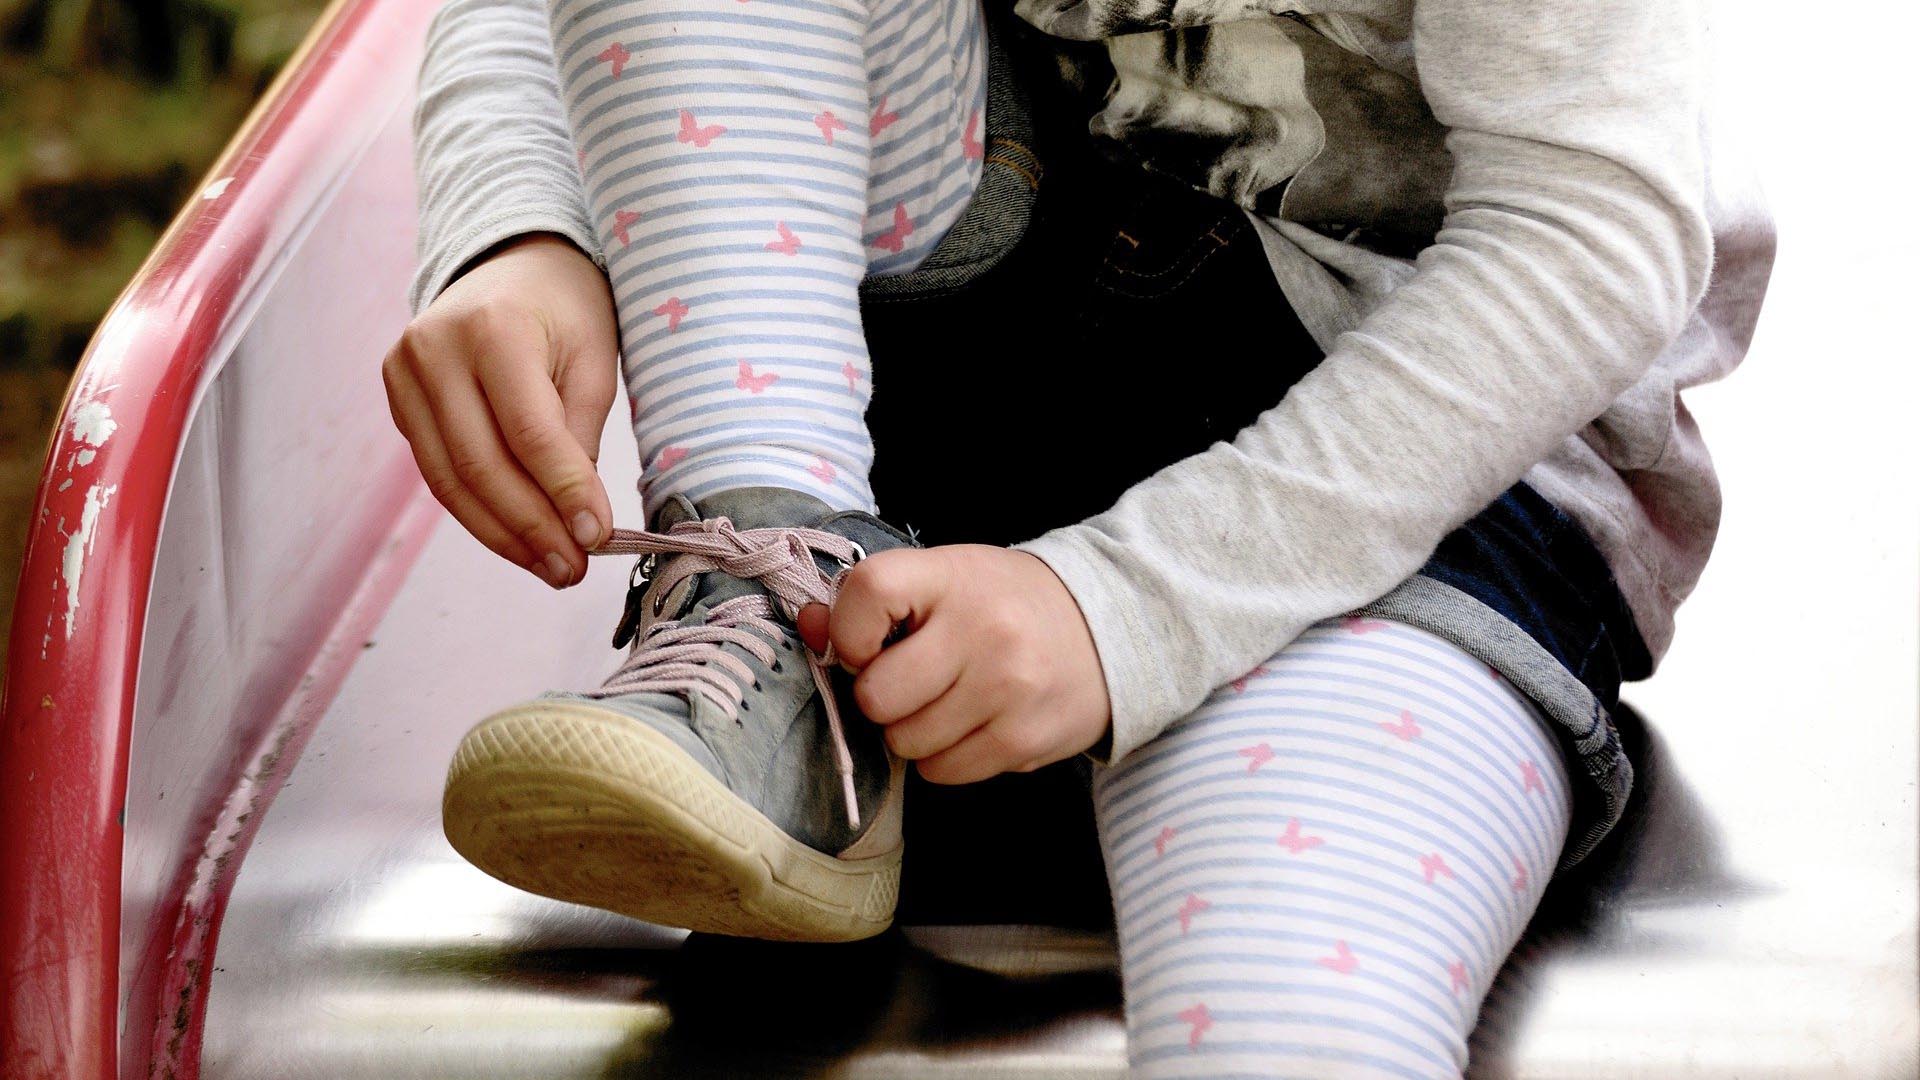 Beine und Füße eines jungen Mädchens mit rosa-blau-gemusterter Strumpfhose. Das Mädchen bindet gerade eine Schleife an ihrem Schuh.